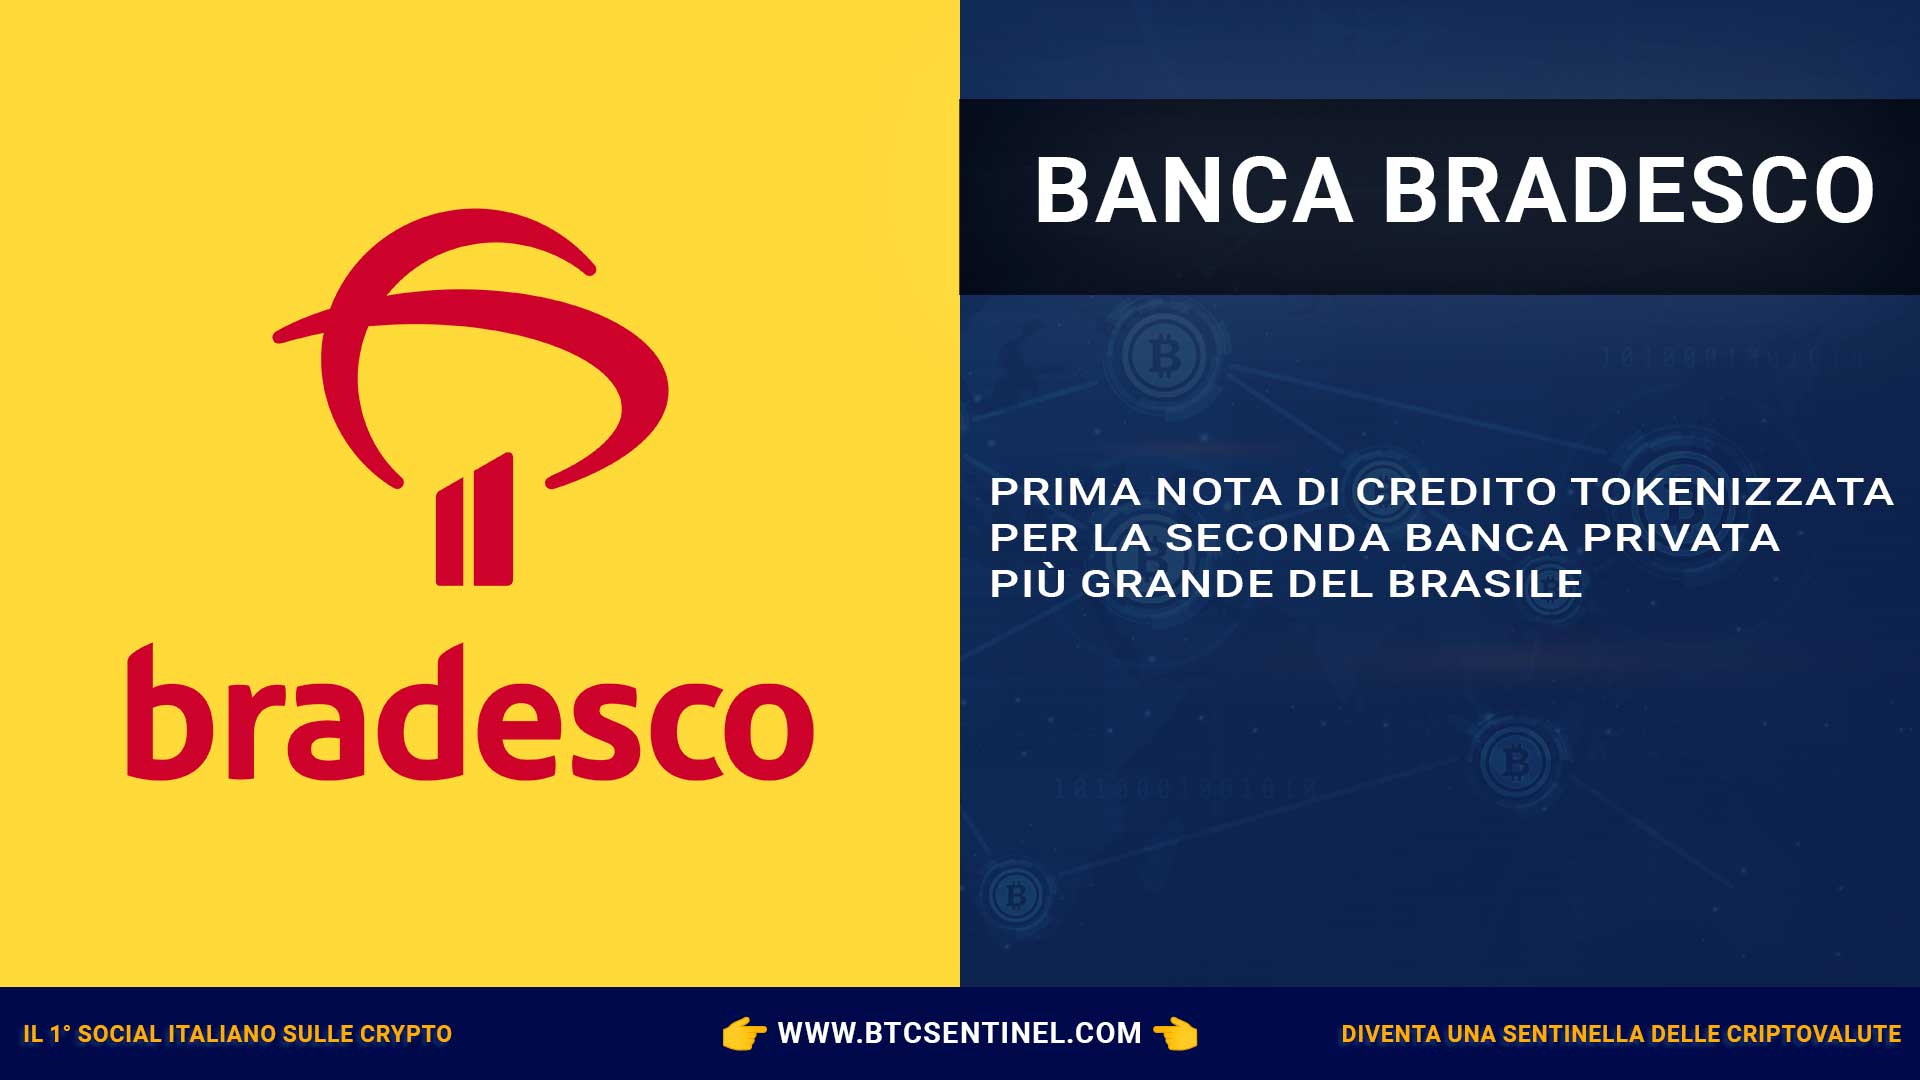 Prima nota di credito tokenizzata per la seconda banca privata più grande del Brasile